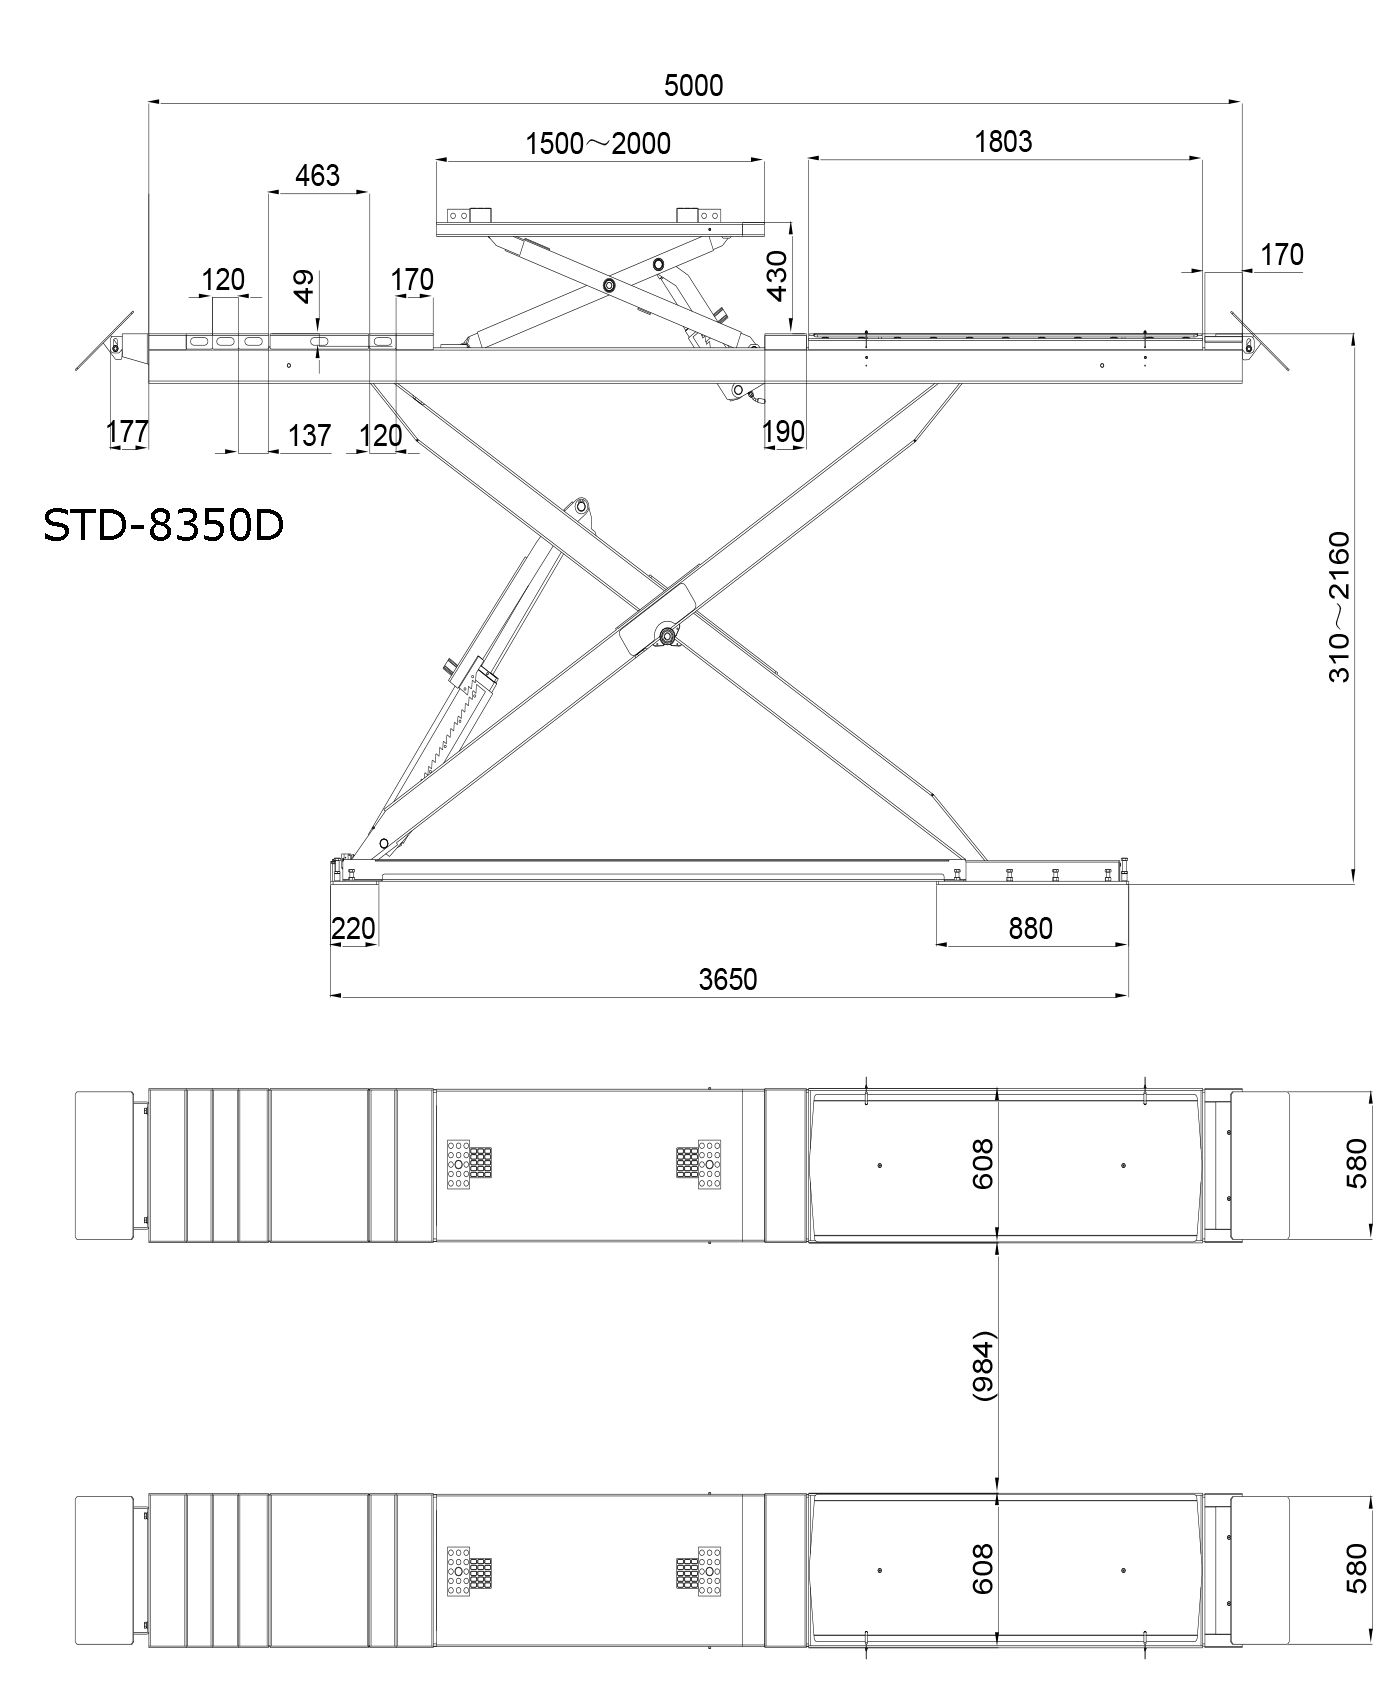 Cầu nâng kiểu cắt kéo STD-8350D - 2 tầng nâng